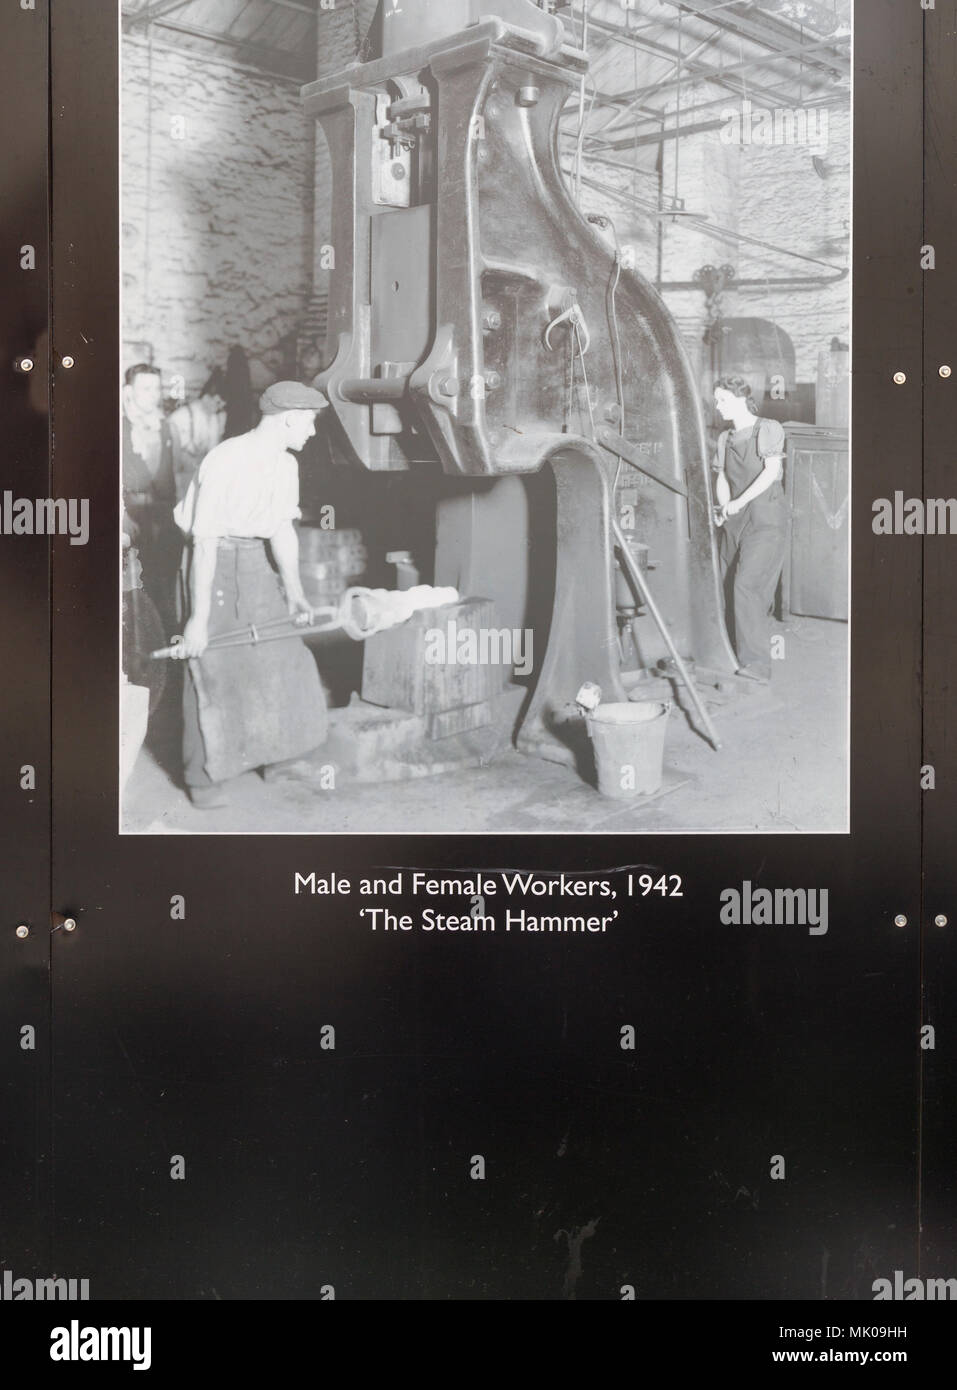 Public display del vecchio e storico immagini sulle opere di GWR, Swindon, Wiltshire, Inghilterra, Regno Unito lavoratori di sesso maschile e di sesso femminile 1942 il martello a vapore Foto Stock